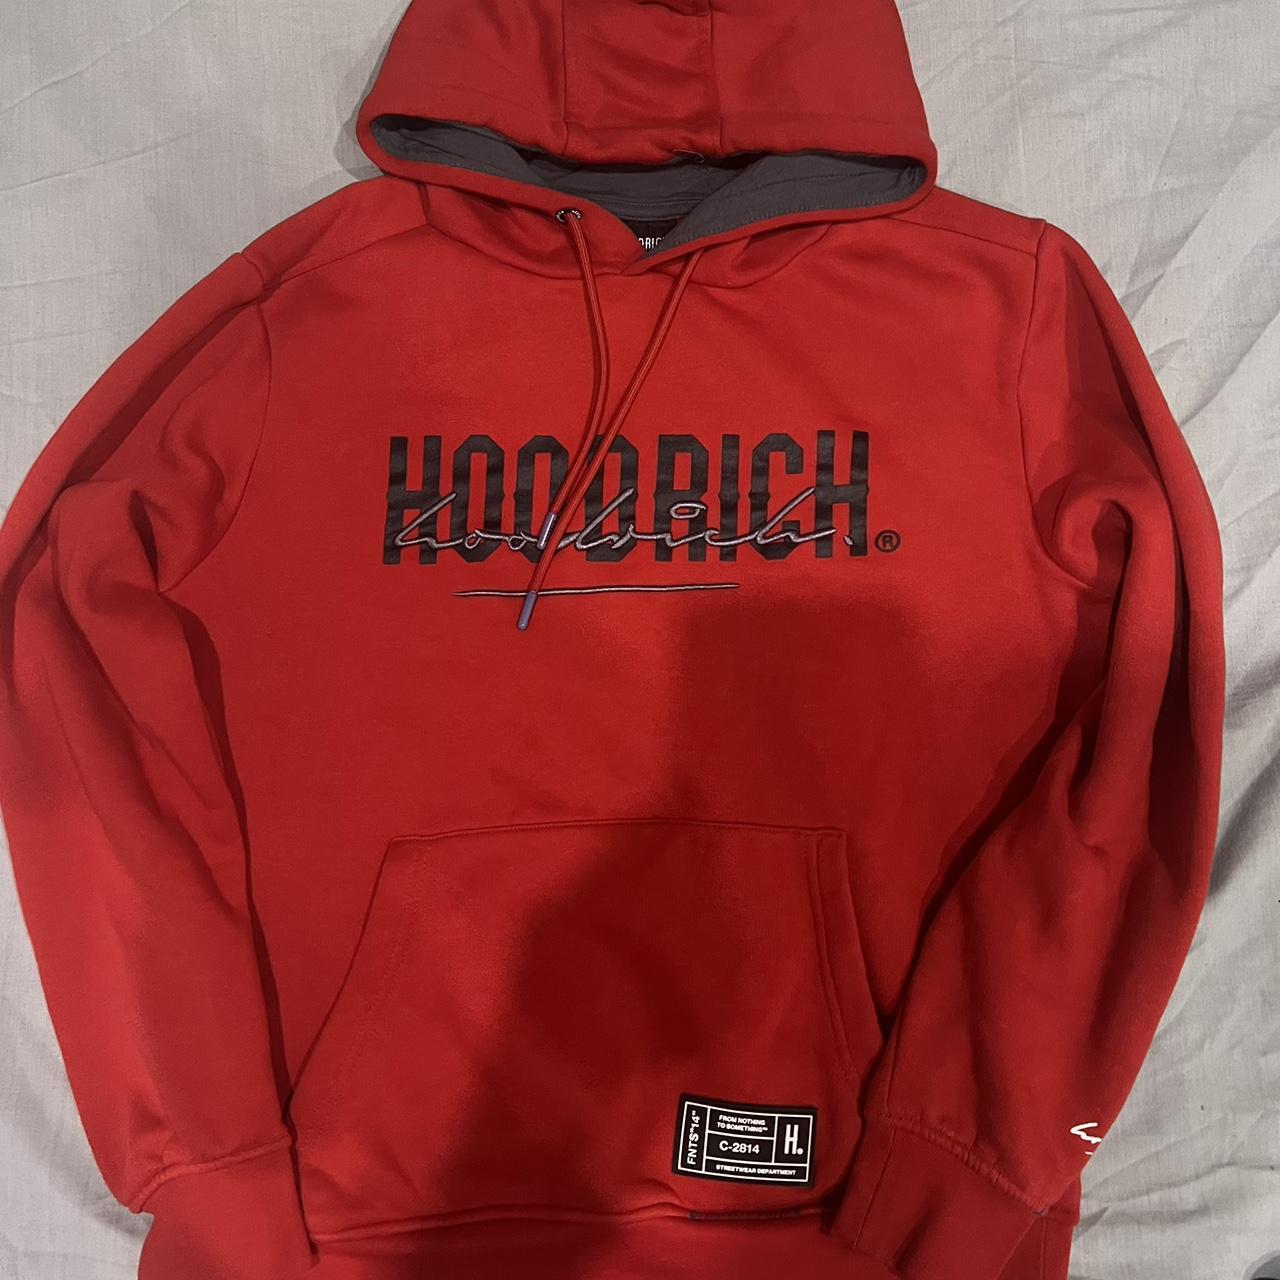 Hoodrich Men's Red and Black Top | Depop